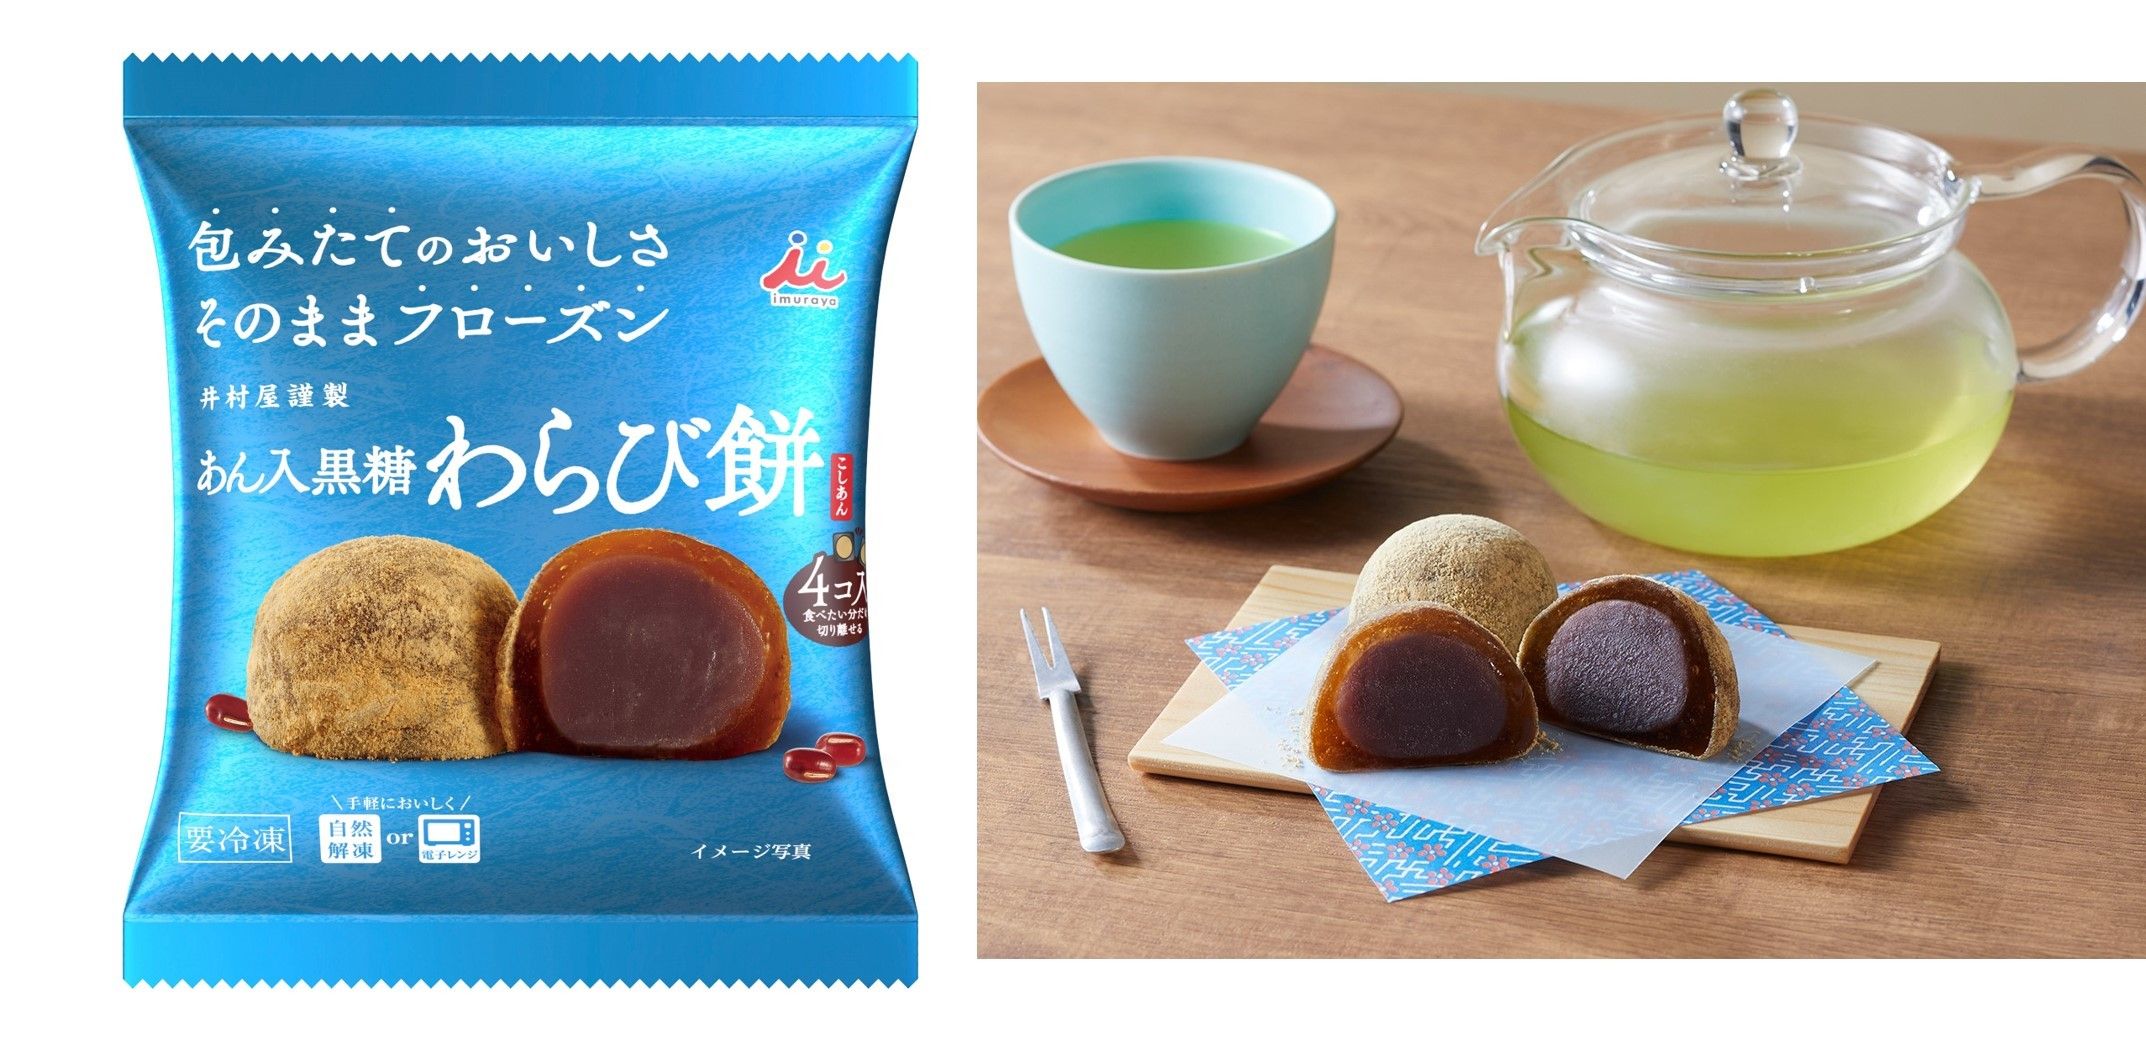  京都の老舗茶舗「福寿園監修」の宇治抹茶を使った冷凍大福が初登場！包みたてのおいしさがそのまま味わえる！ #Z世代Pick